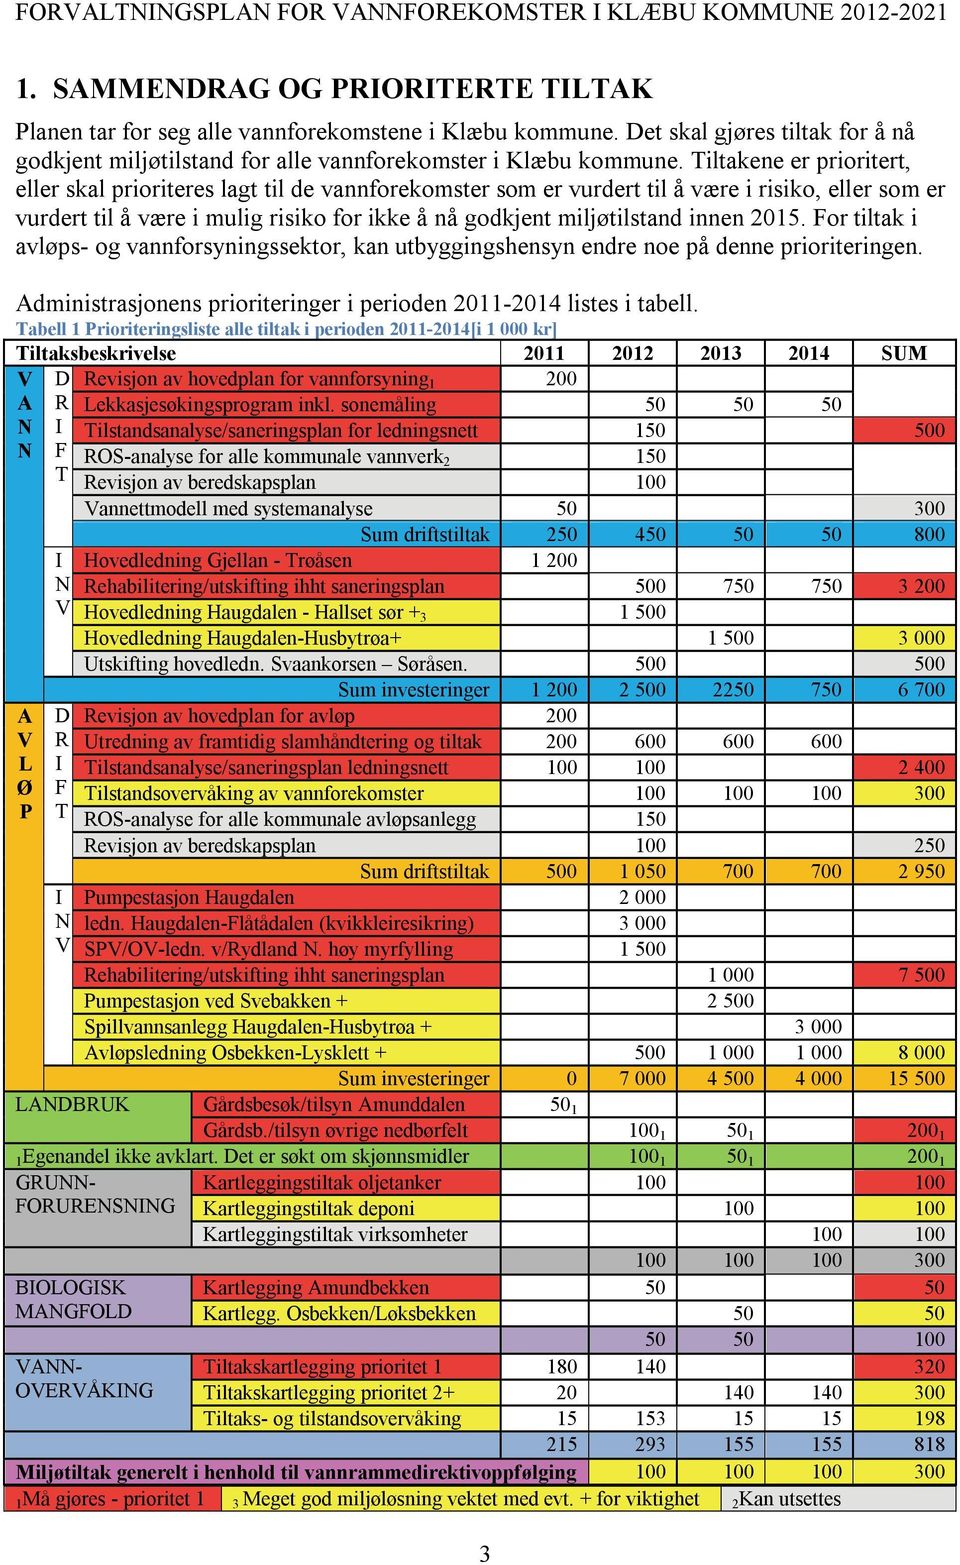 innen 2015. For tiltak i avløps- og vannforsyningssektor, kan utbyggingshensyn endre noe på denne prioriteringen. Administrasjonens prioriteringer i perioden 2011-2014 listes i tabell.